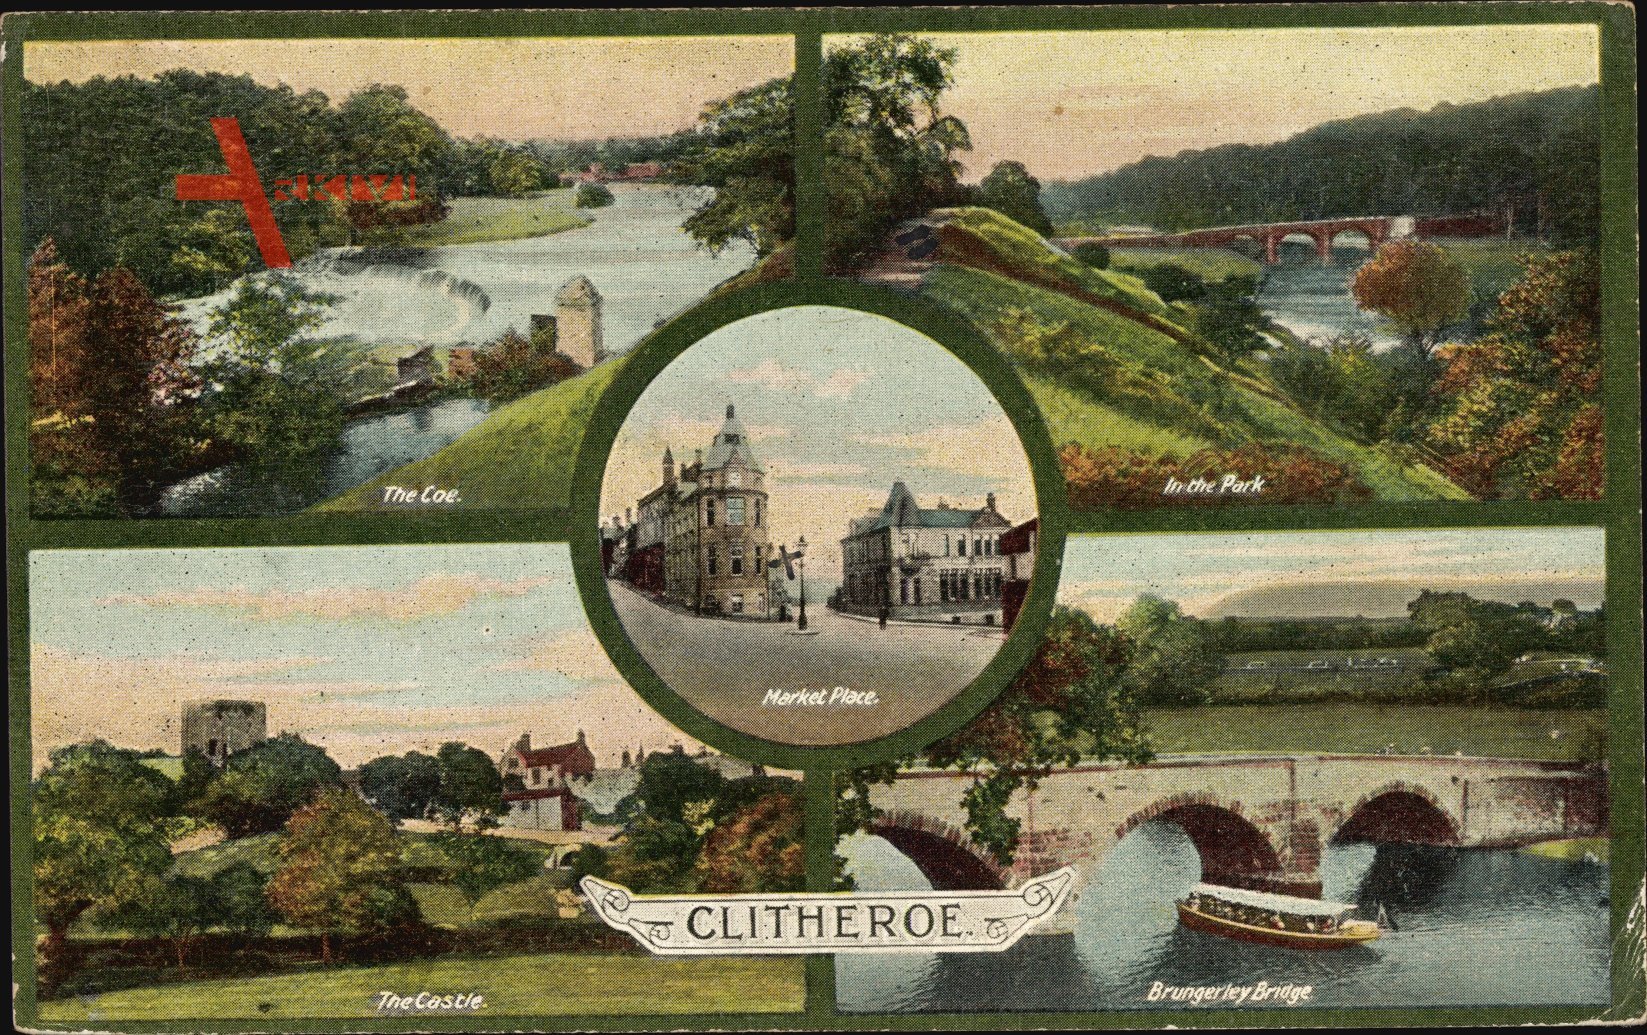 Clitheroe Lancashire England, Brungerley Bridge, Park, Castle, The Coe